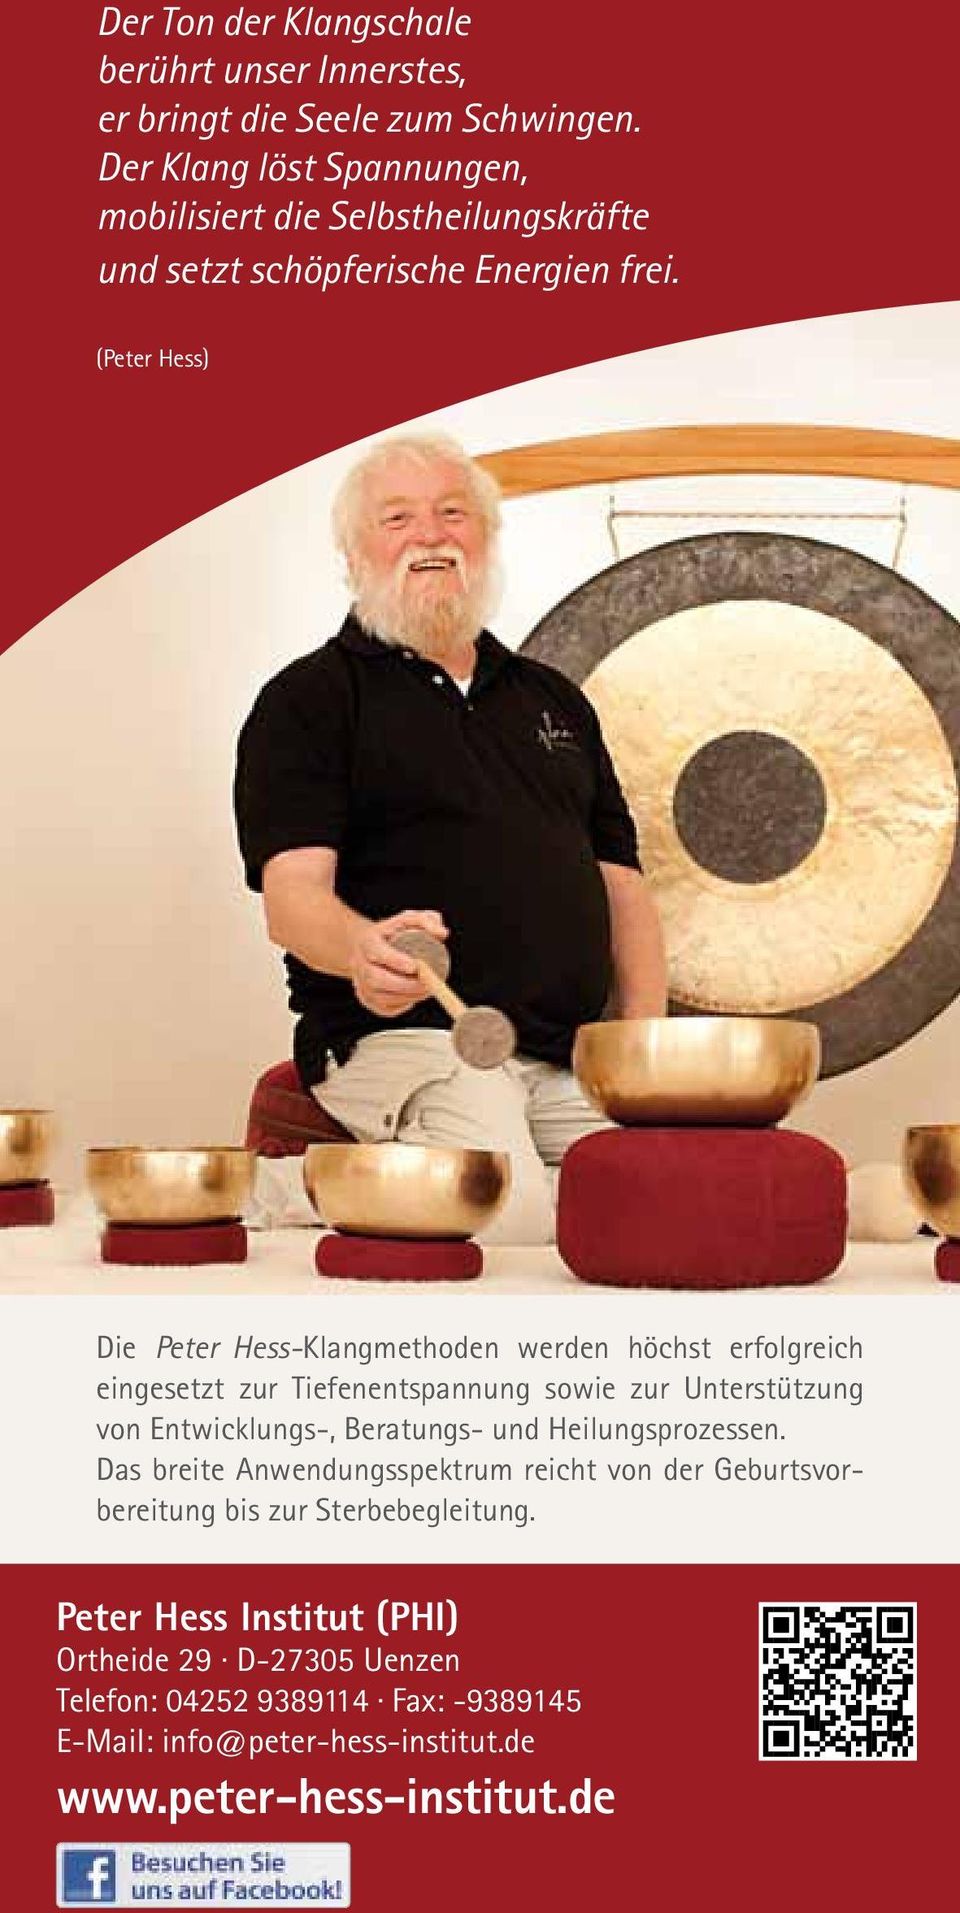 (Peter Hess) Die Peter Hess-Klangmethoden werden höchst erfolgreich eingesetzt zur Tiefenentspannung sowie zur Unterstützung von Entwicklungs-,